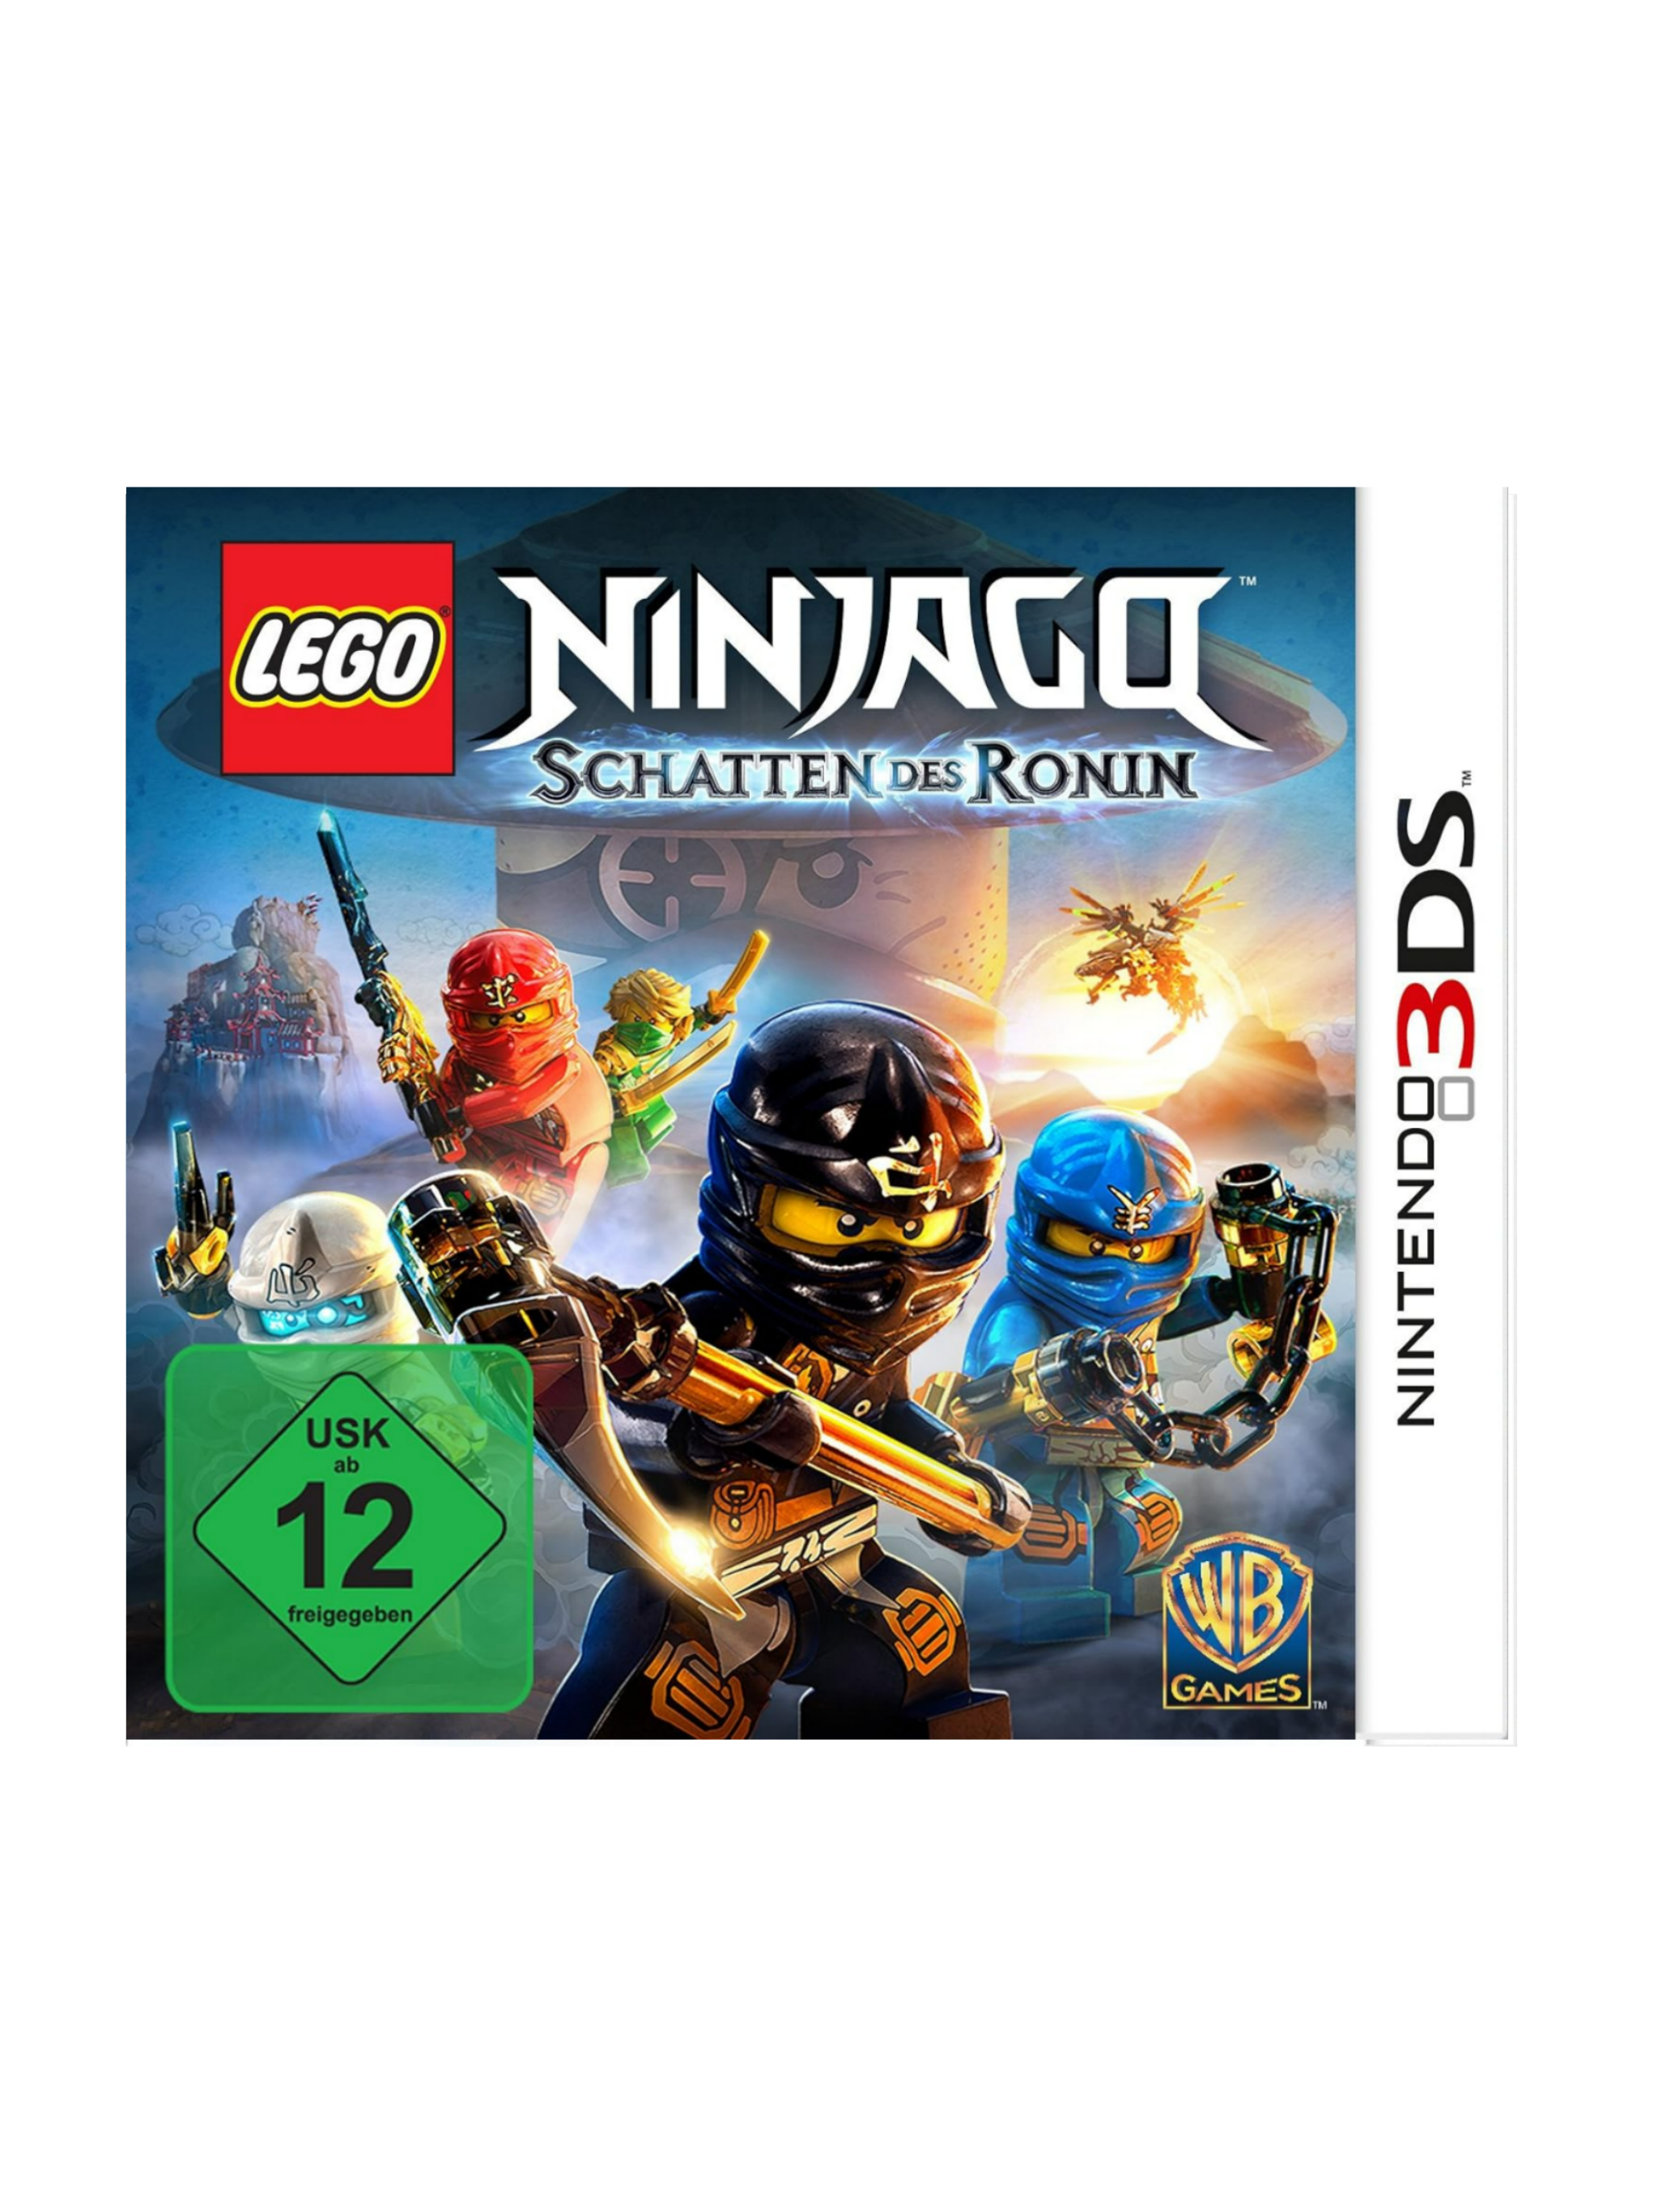 LEGO Ninjago - Schatten des Ronin [Nintendo 3DS]